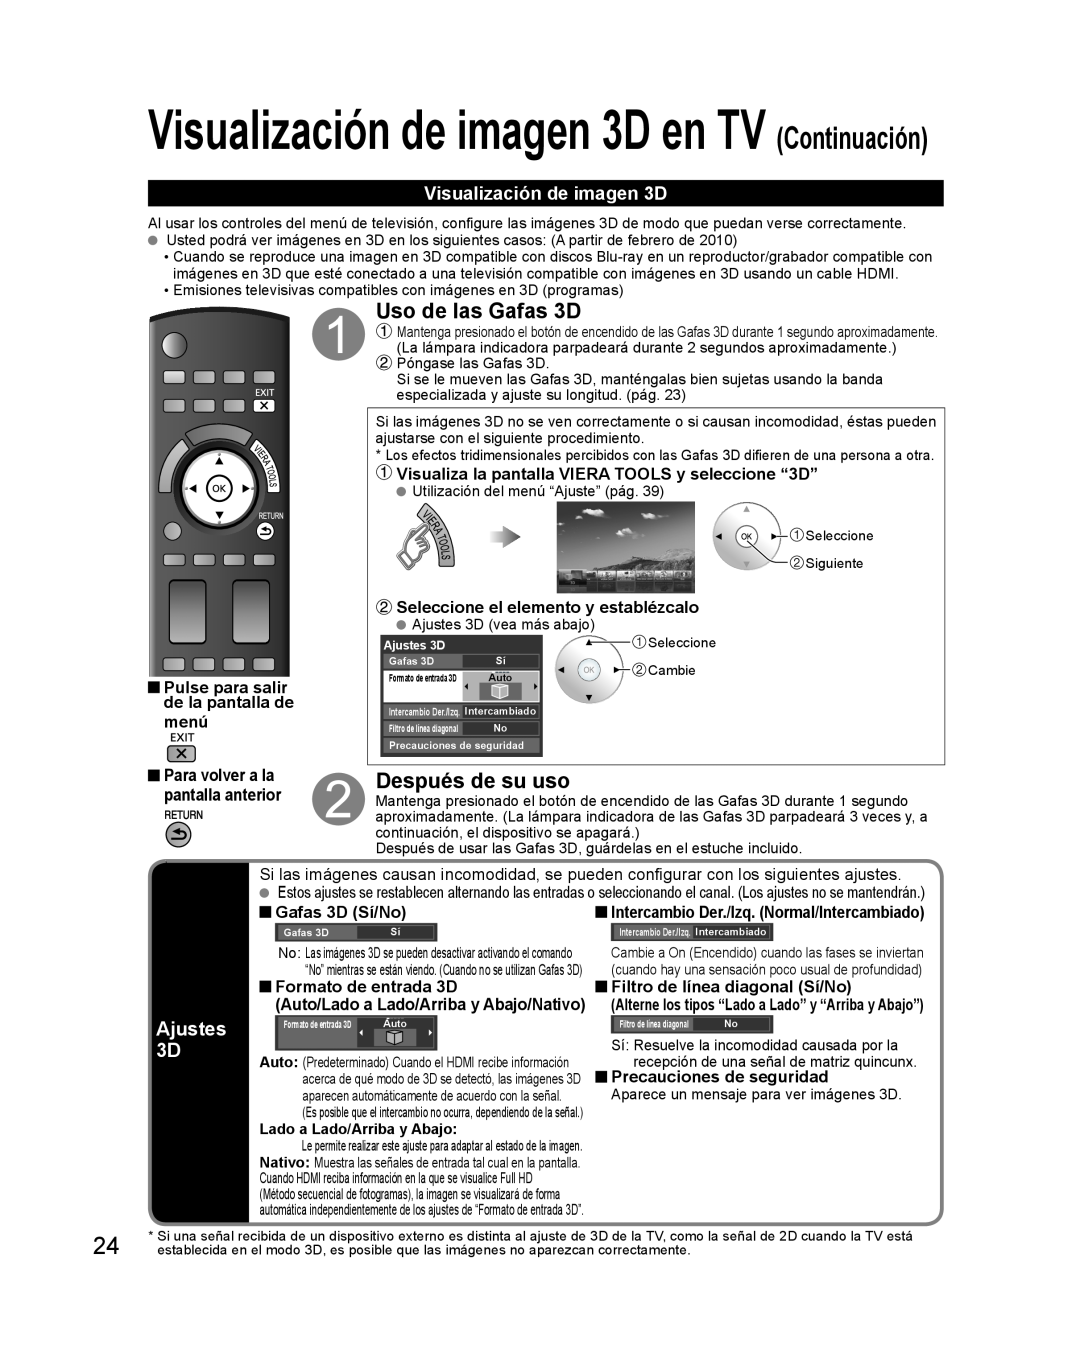 Panasonic TQB2AA0579 Visualización de imagen 3D en TV Continuación, Uso de las Gafas 3D, Después de su uso, Ajustes 3D 